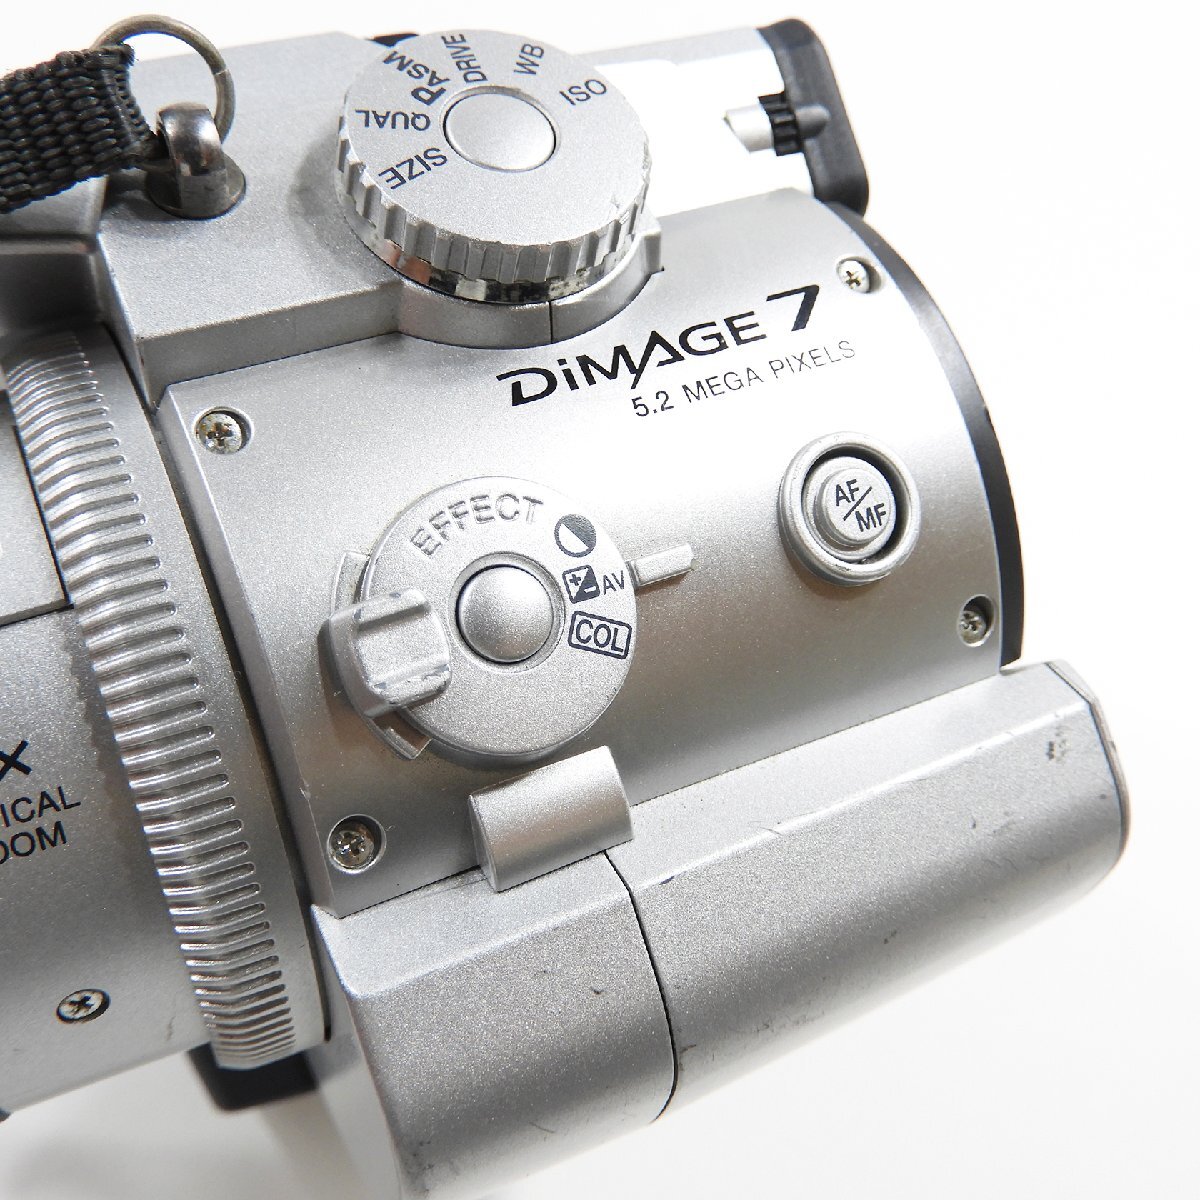 Minolta ミノルタ Dimage 7 デジタルカメラ ジャンク #17545 カメラ 趣味 コレクション デジカメの画像6